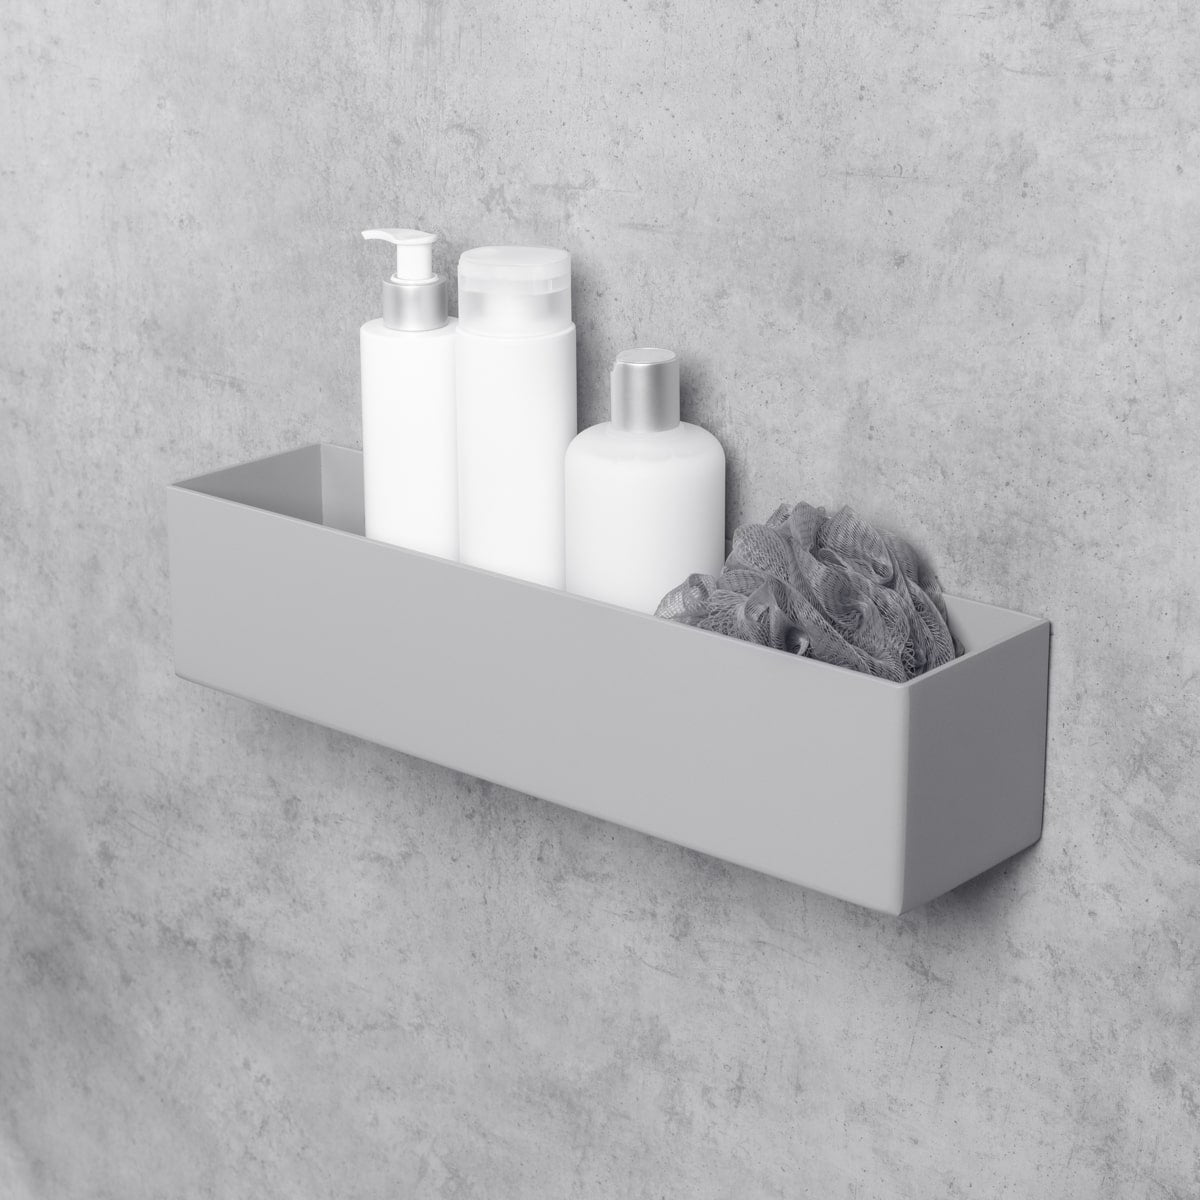 grey bathroom shelf-organizer basket